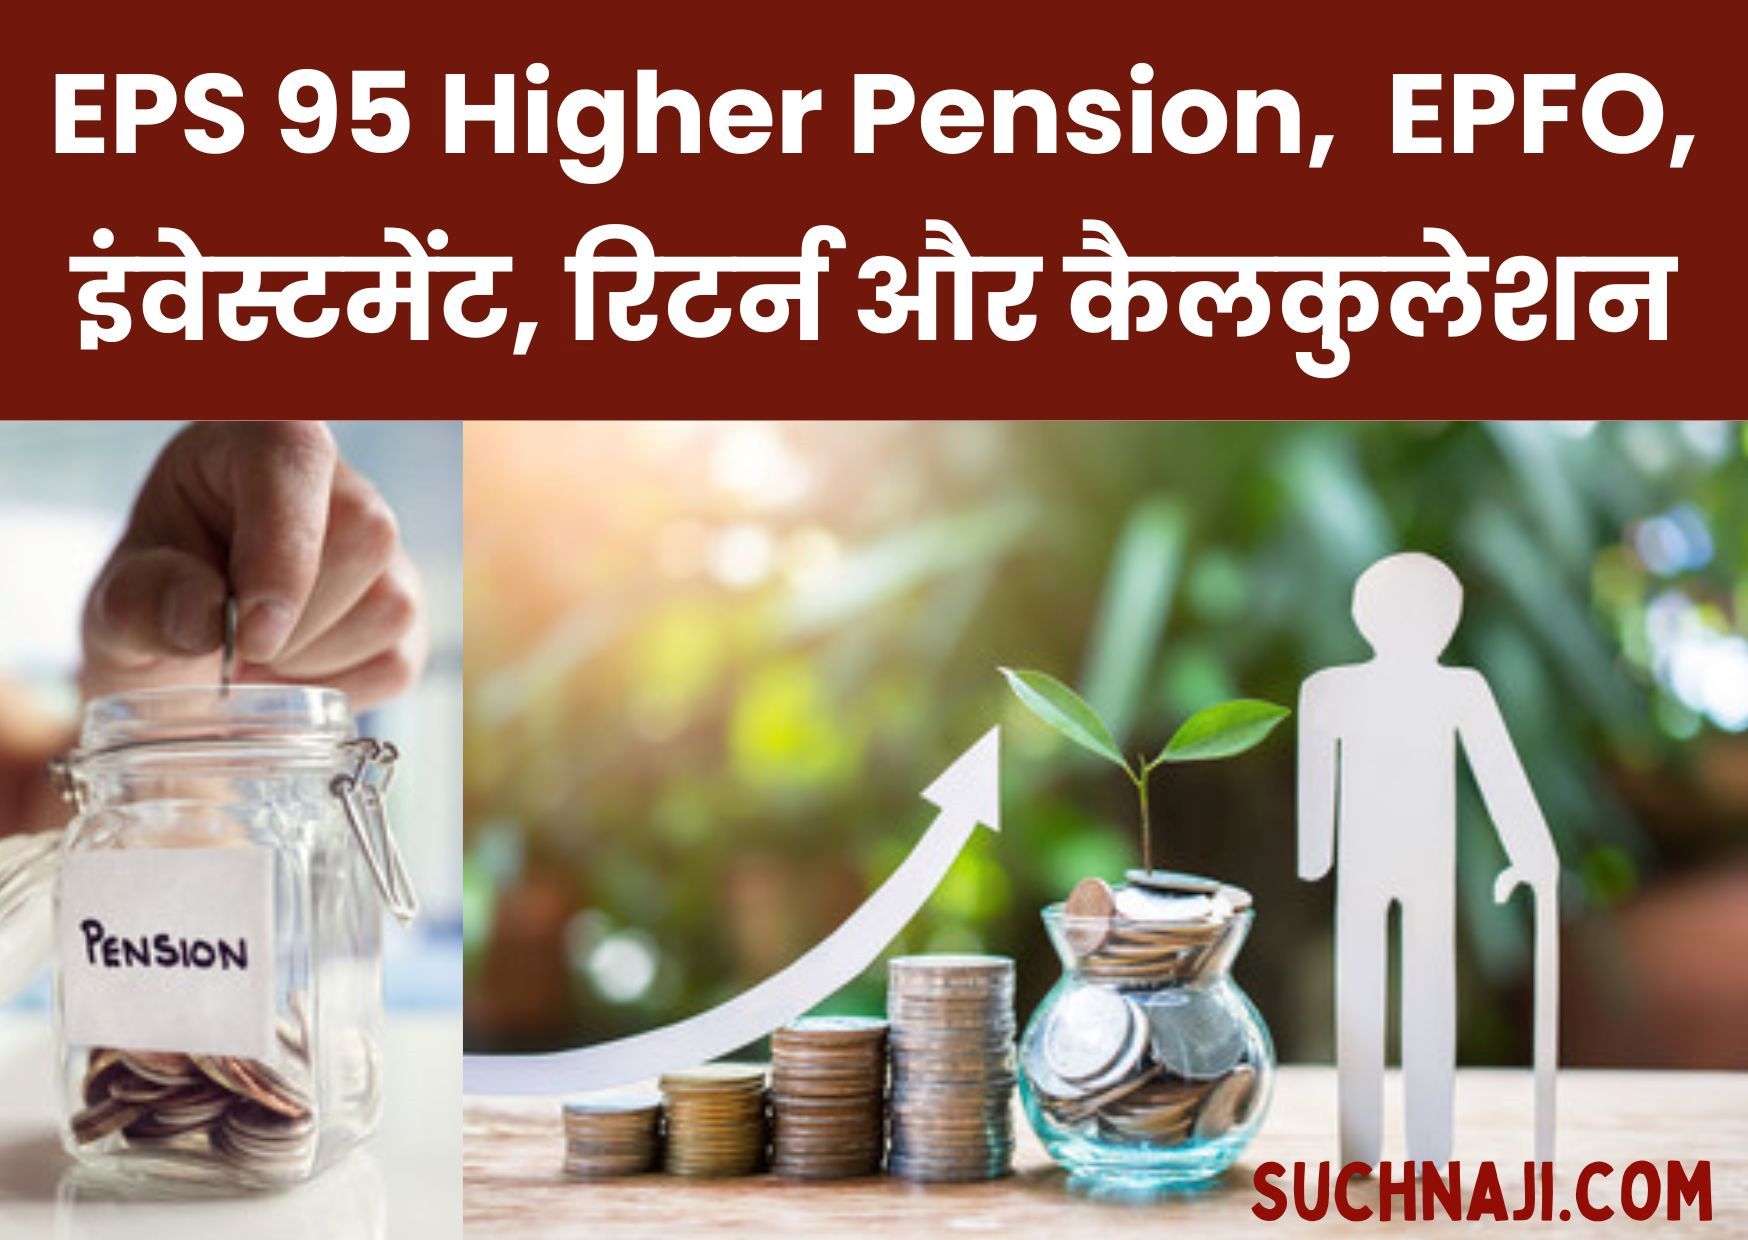 EPS 95 Higher Pension: EPFO, 38 हजार पेंशन, इंवेस्टमेंट, रिटर्न और कैलकुलेशन पर बड़ा दावा